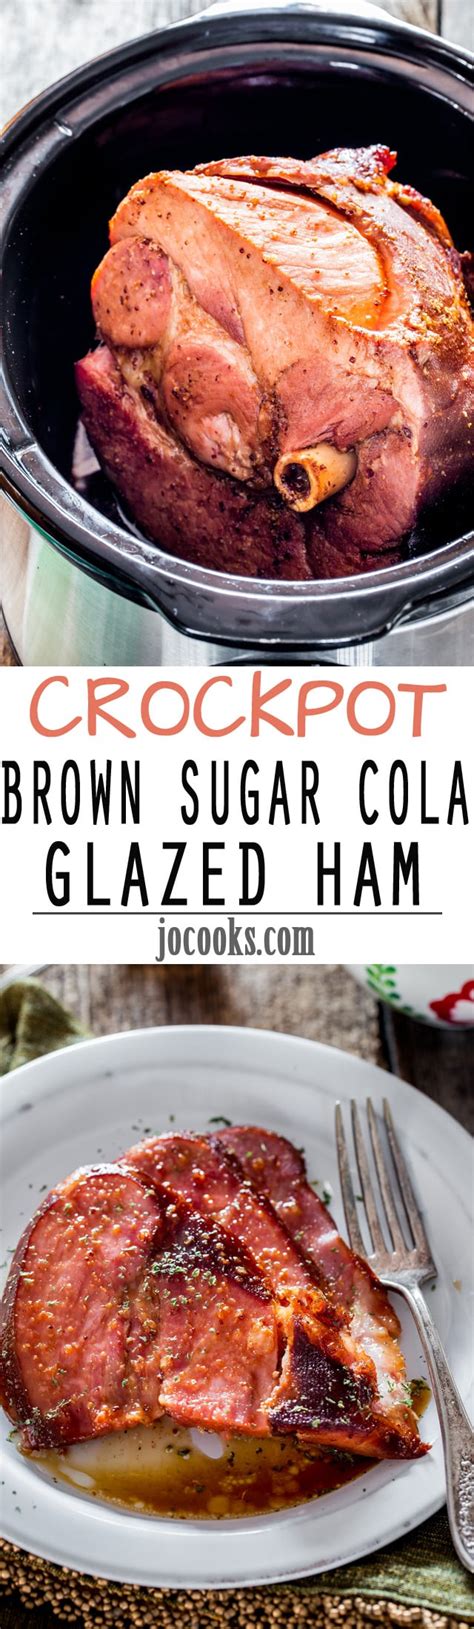 Crockpot Brown Sugar Cola Glazed Ham Jo Cooks